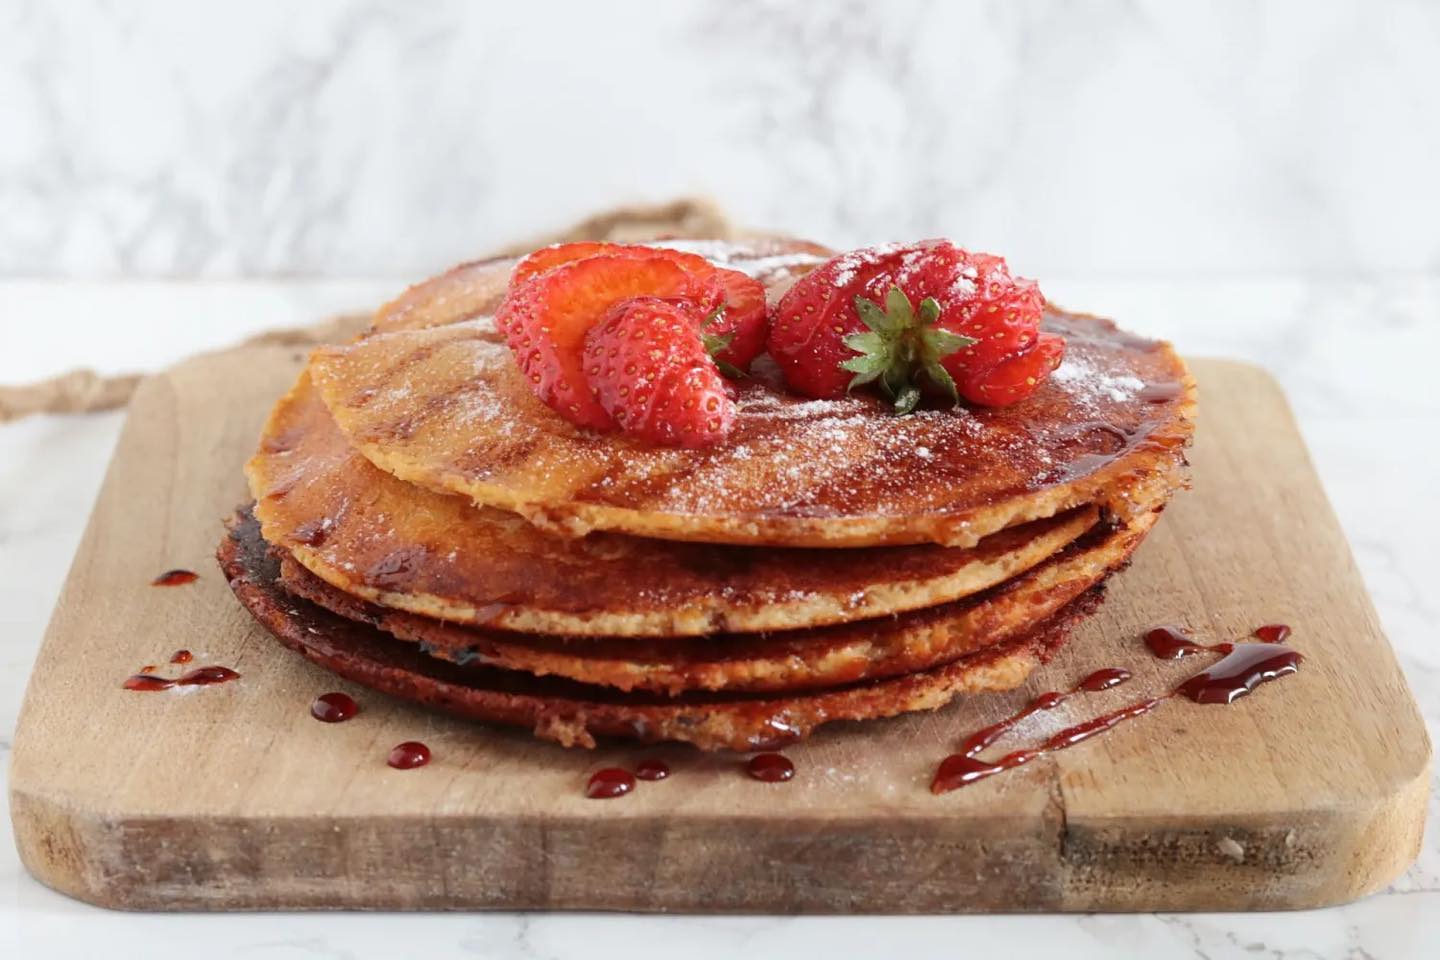 Het is volop aardbeien seizoen en wat groeien ze hier fantastisch! 🍓Gisteren deelde ik heerlijke aardbeien gebakjes en vandaag deze smakelijke aardbeien pannenkoeken! In een handomdraai gemaakt en super lekker voor de lunch 🥰 Wat zijn jullie favoriete recepten met aardbeien? ☀️ Alvast een fijn weekend! (Het recept vind je op mijn website onder “aardbeien pannenkoeken”). #koolhydraatarm #koolhydraatarmerecepten #koolhydraatarmdieet #lowcarb #keto #oanhskitchen